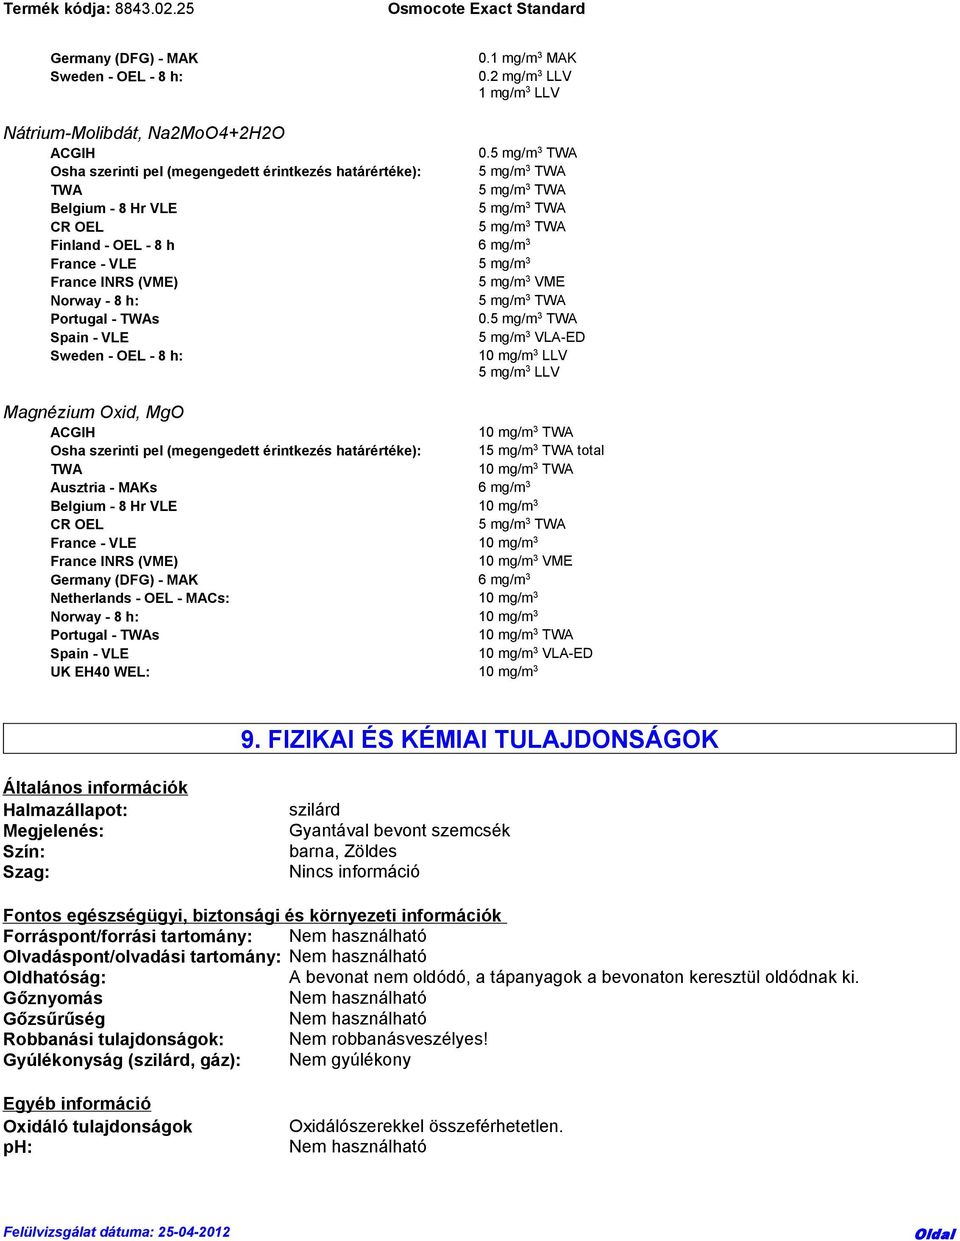 Spain - VLE 5 mg/m 3 VLA-ED Sweden - OEL - 8 h: 10 mg/m 3 LLV 5 mg/m 3 LLV Magnézium Oxid, MgO ACGIH 10 mg/m 3 TWA Osha szerinti pel (megengedett érintkezés határértéke): 1 total TWA 10 mg/m 3 TWA